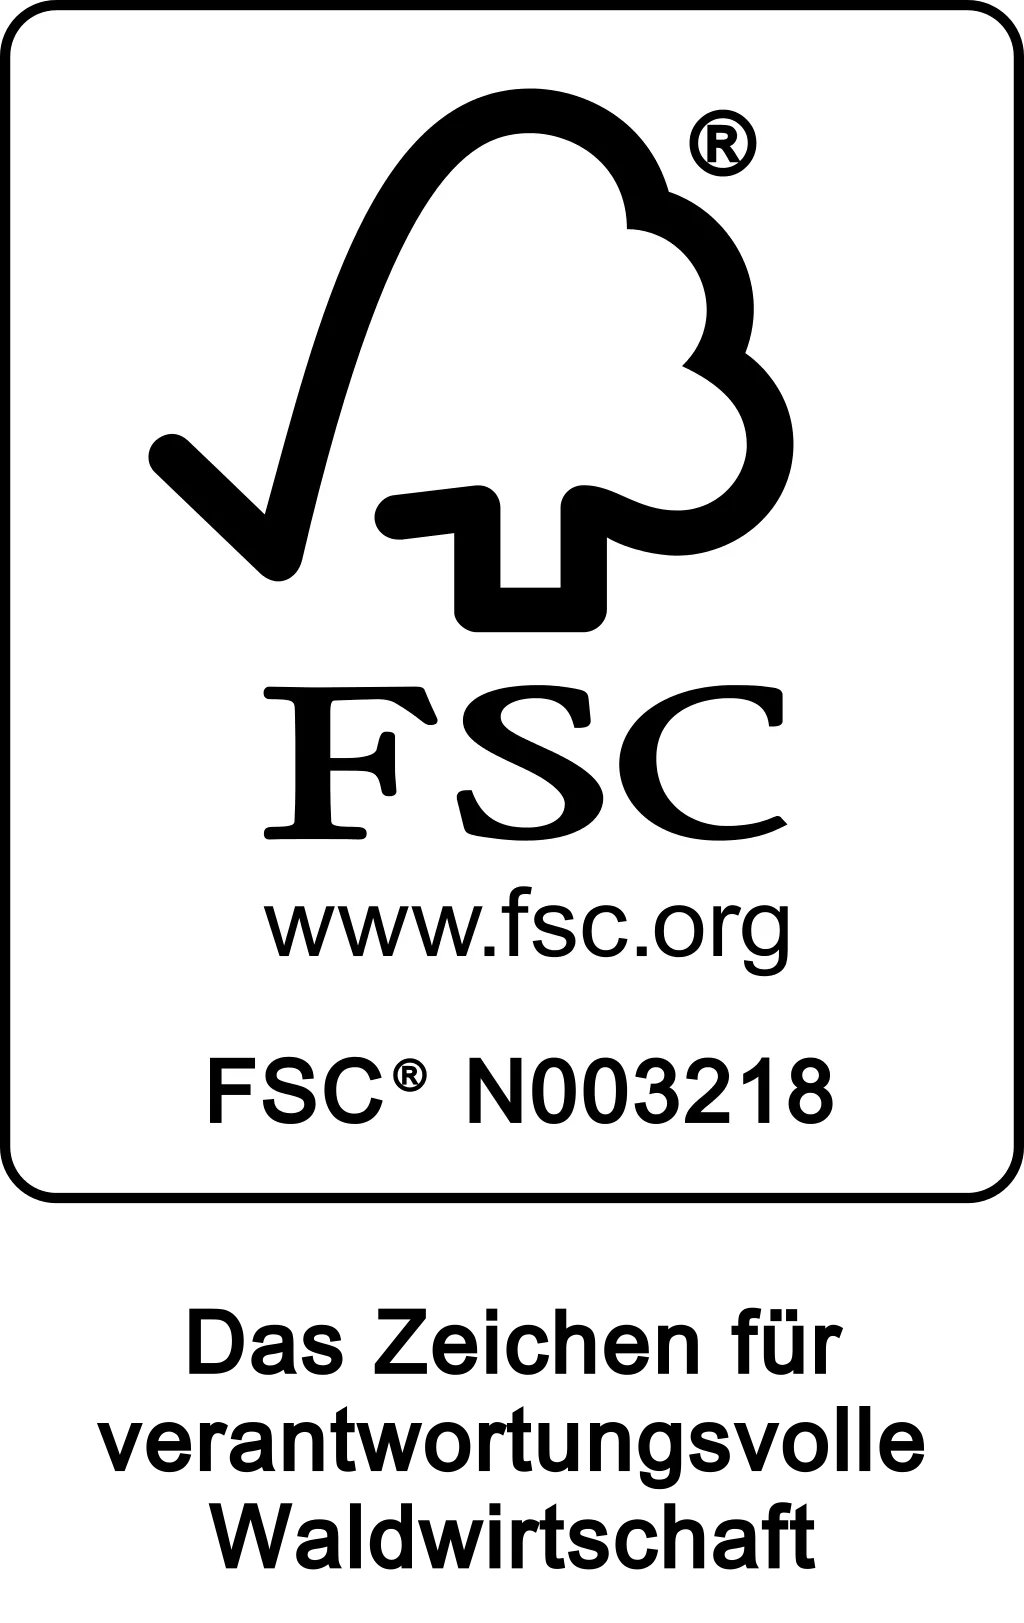 FSC - Das Zeichen für verantwortungsvolle Waldwirtschaft